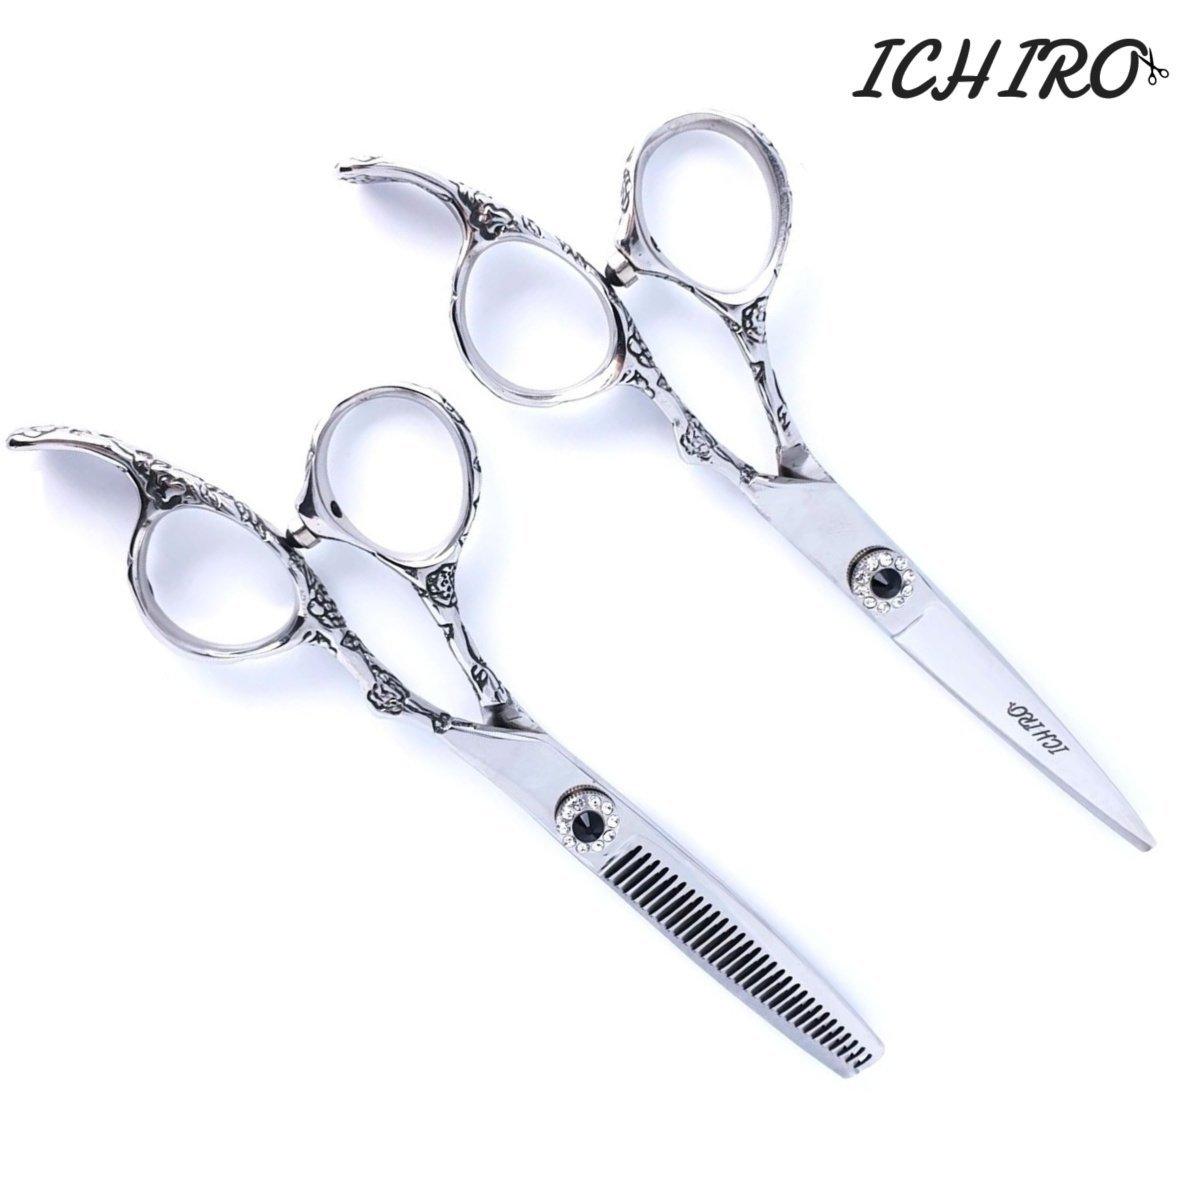 Ichiro Hana Hair Cutting Scissors Set - Japan Scissors